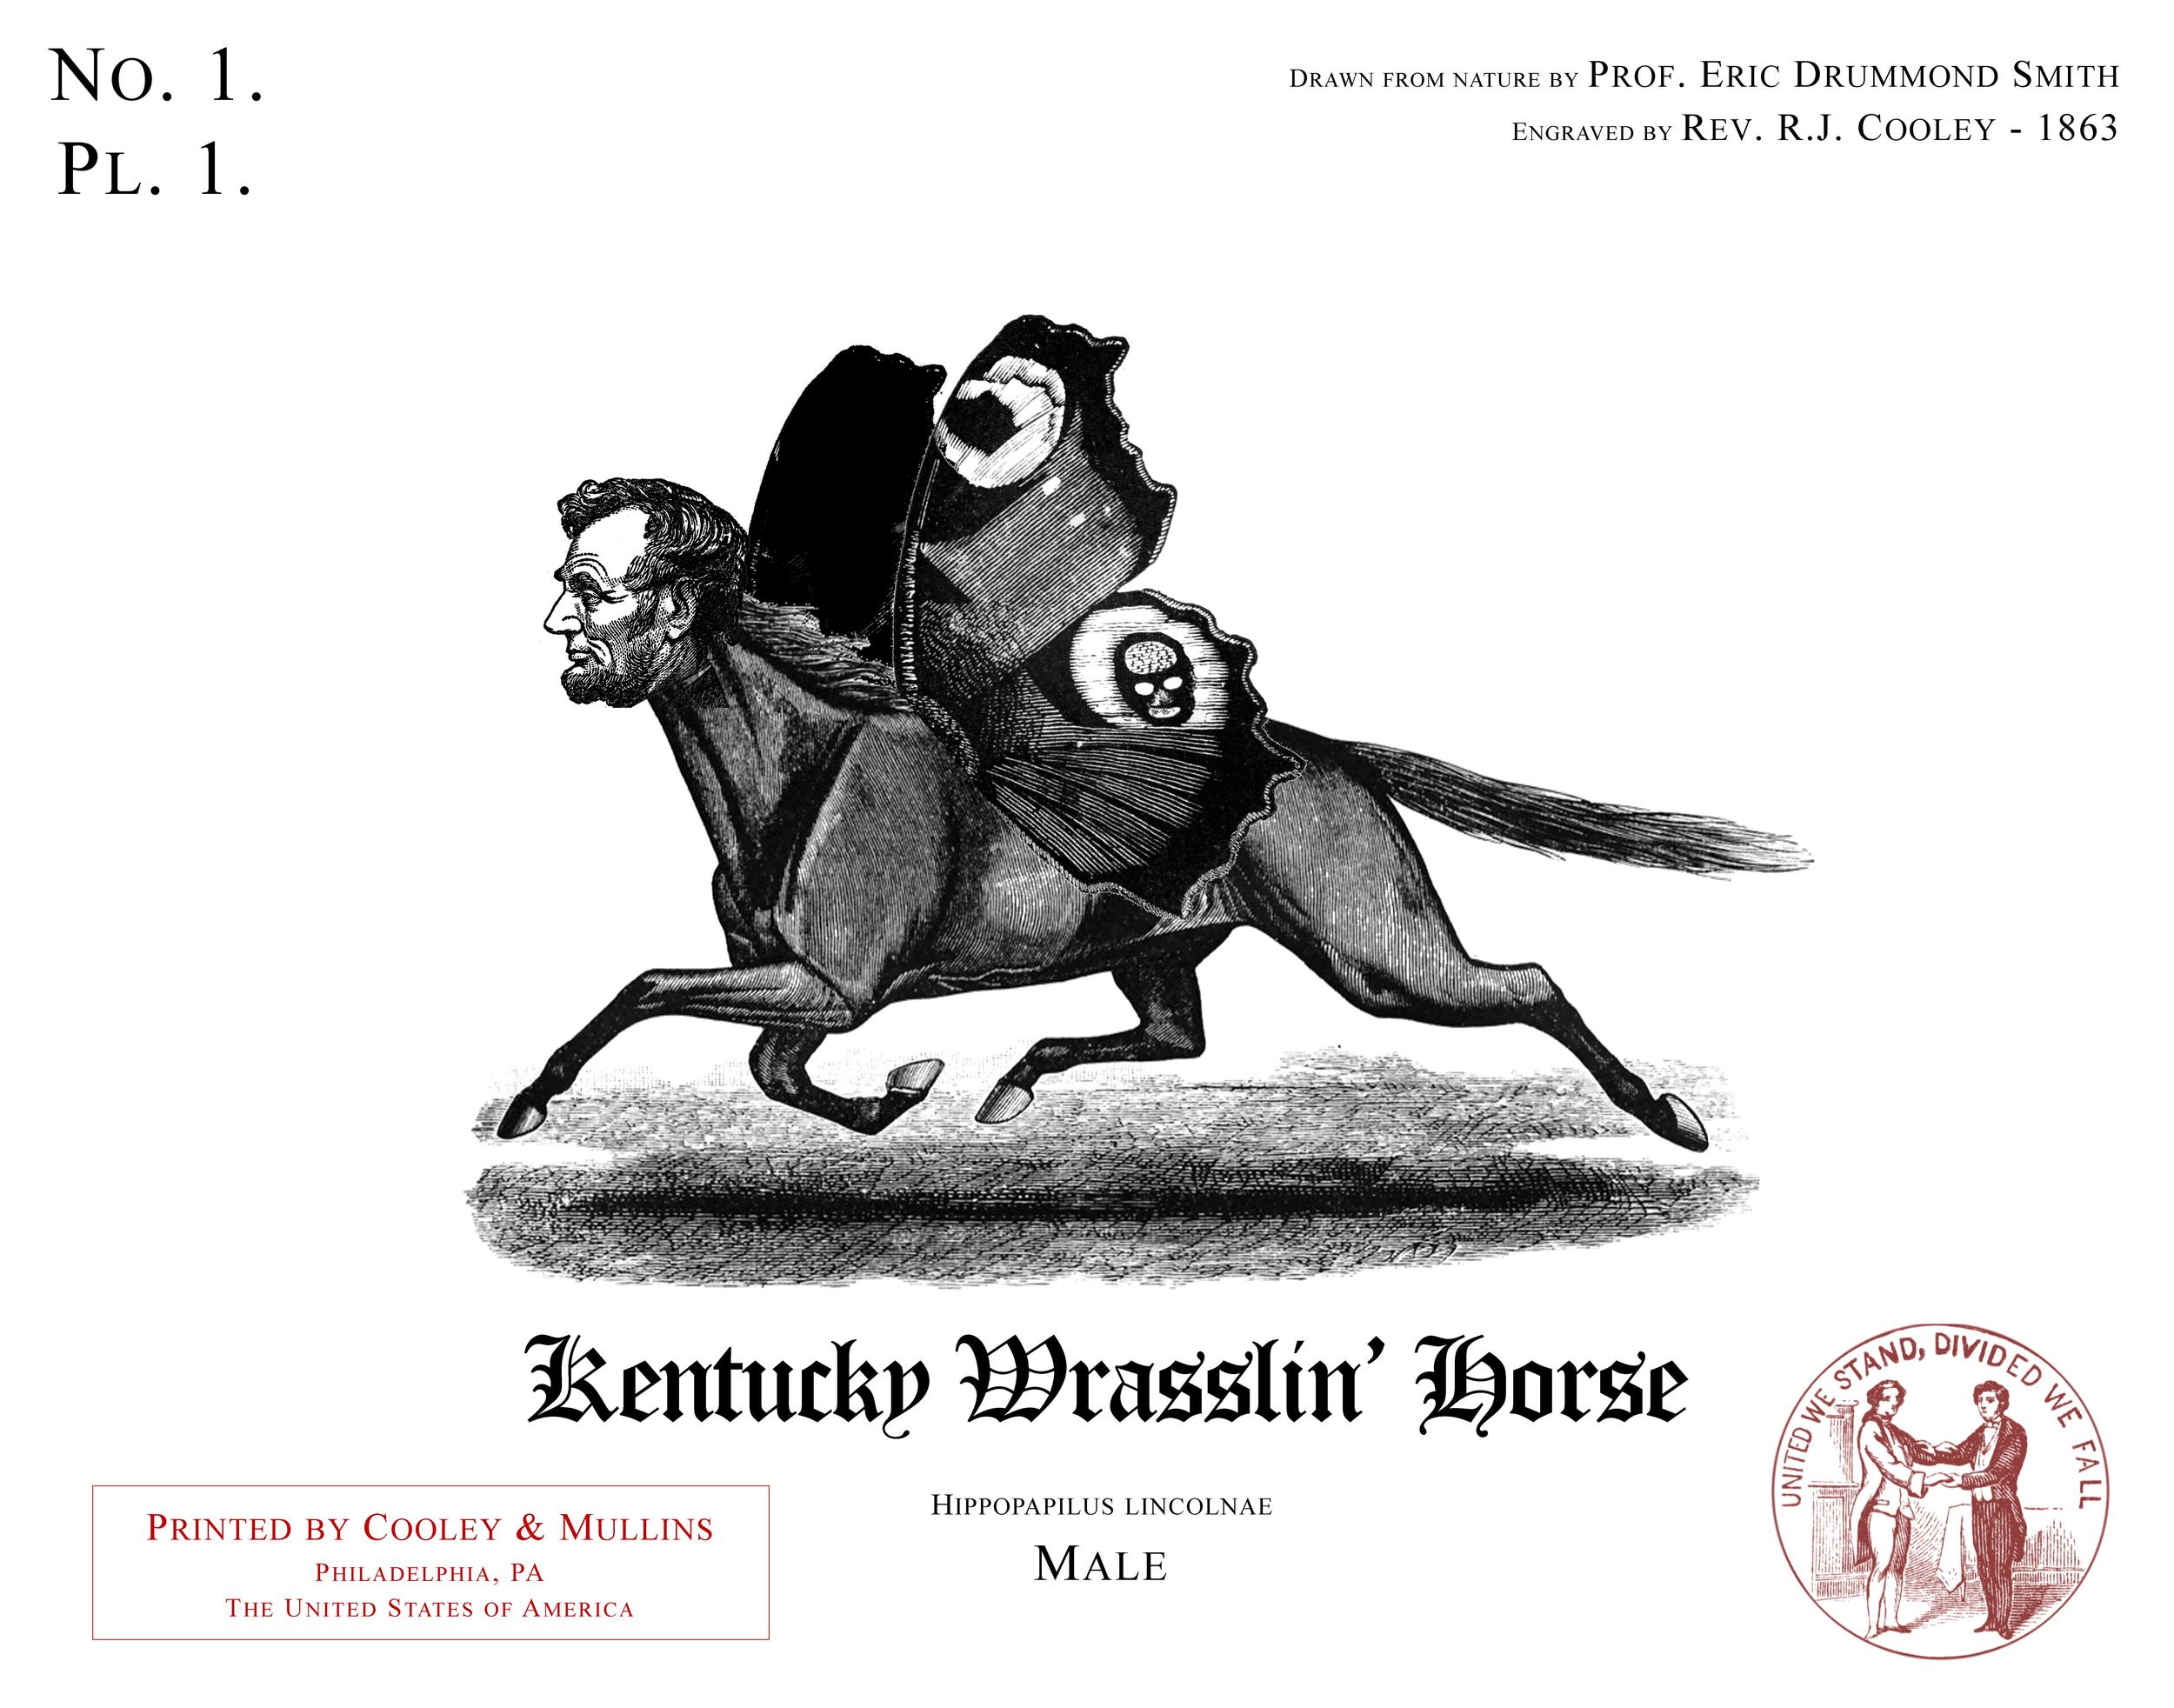 The Kentucky Wrasslin' Horse